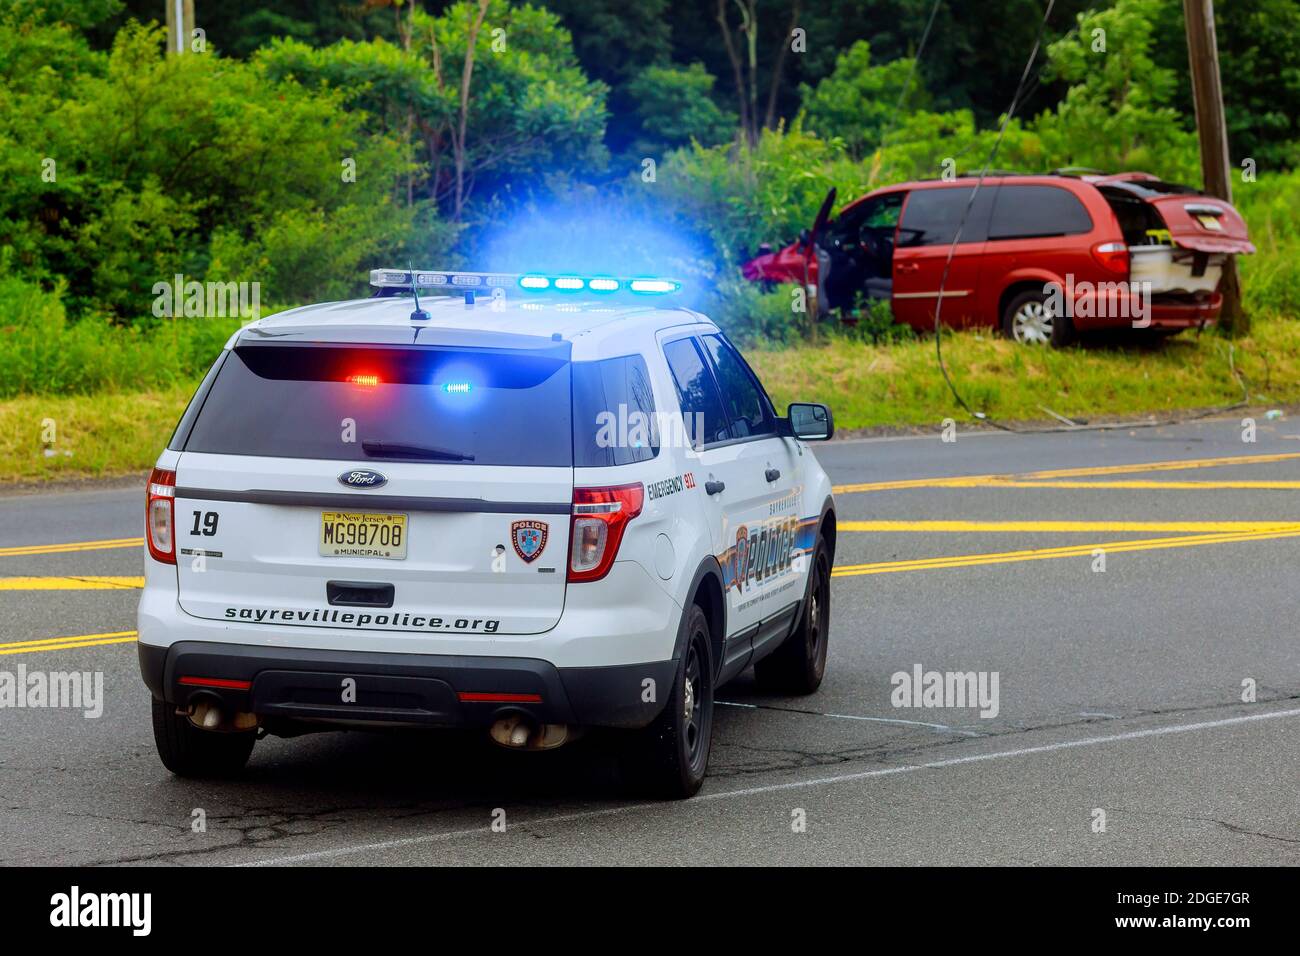 Sayreville NJ USA - Jujy 02, 2018:polizia luci blu lampeggianti in caso di incidente auto danneggiata Foto Stock